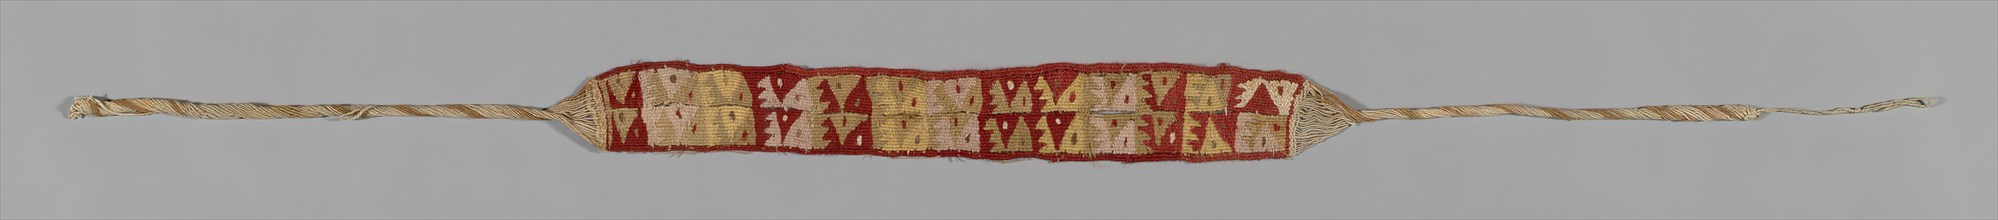 Headband or Belt Fragment, Peru, A.D. 1476/1532. Provincial Inca.